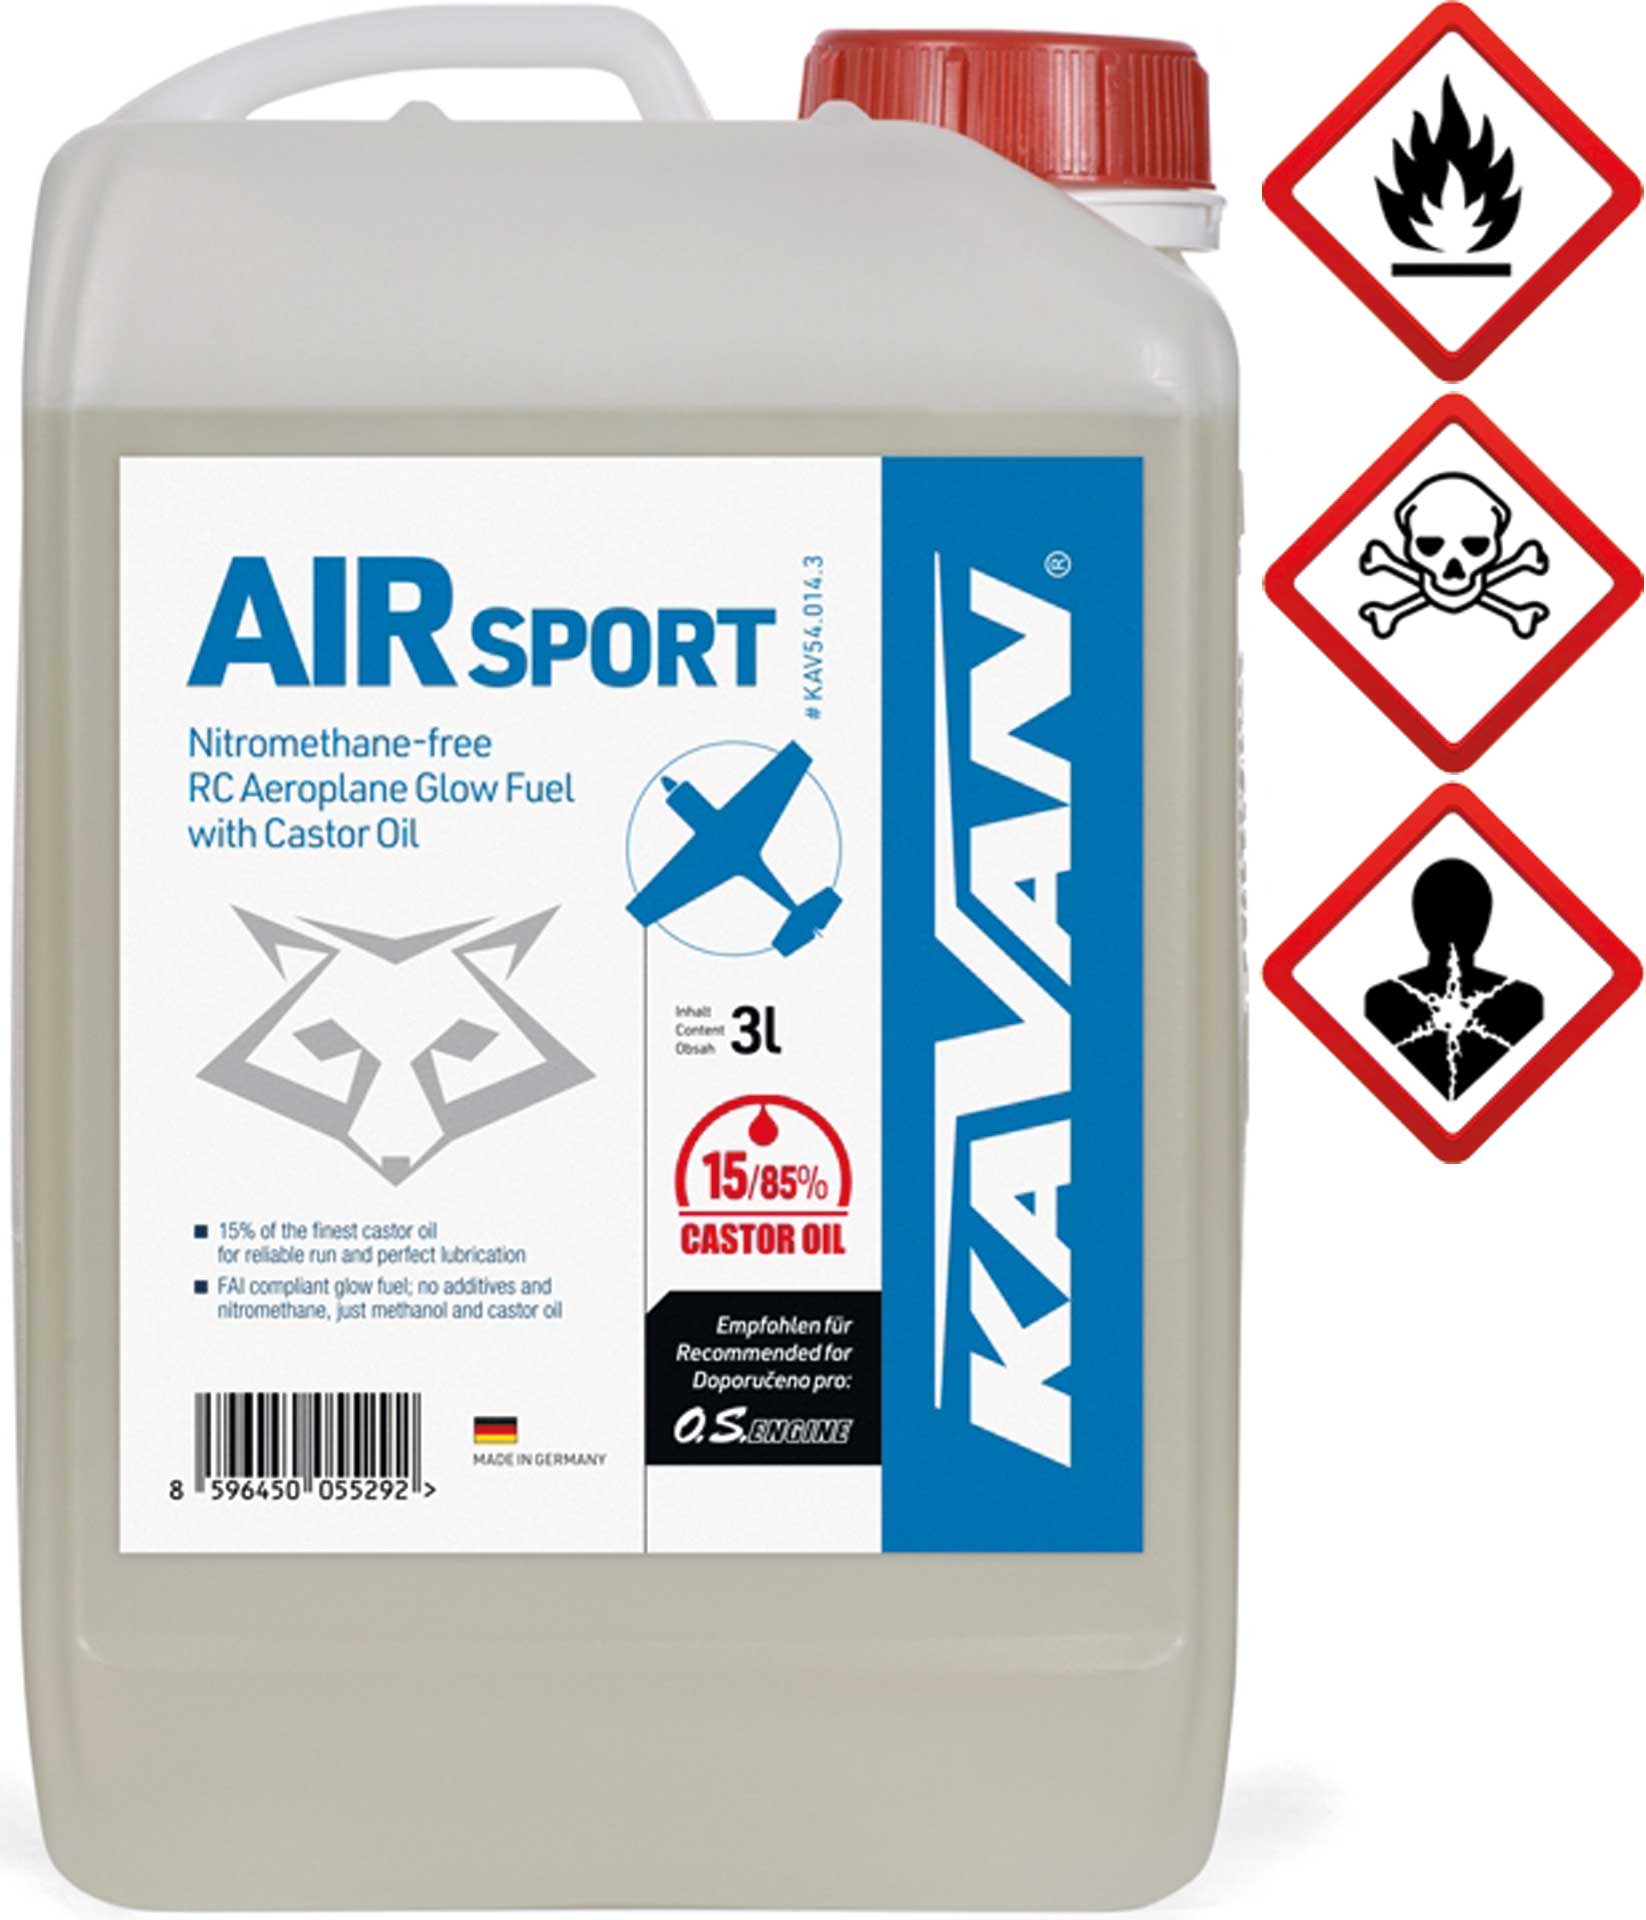 KAVAN Air Sport 15/85 3 litres de carburant, Essence, carburant pour moteurs à allumage par incandescence